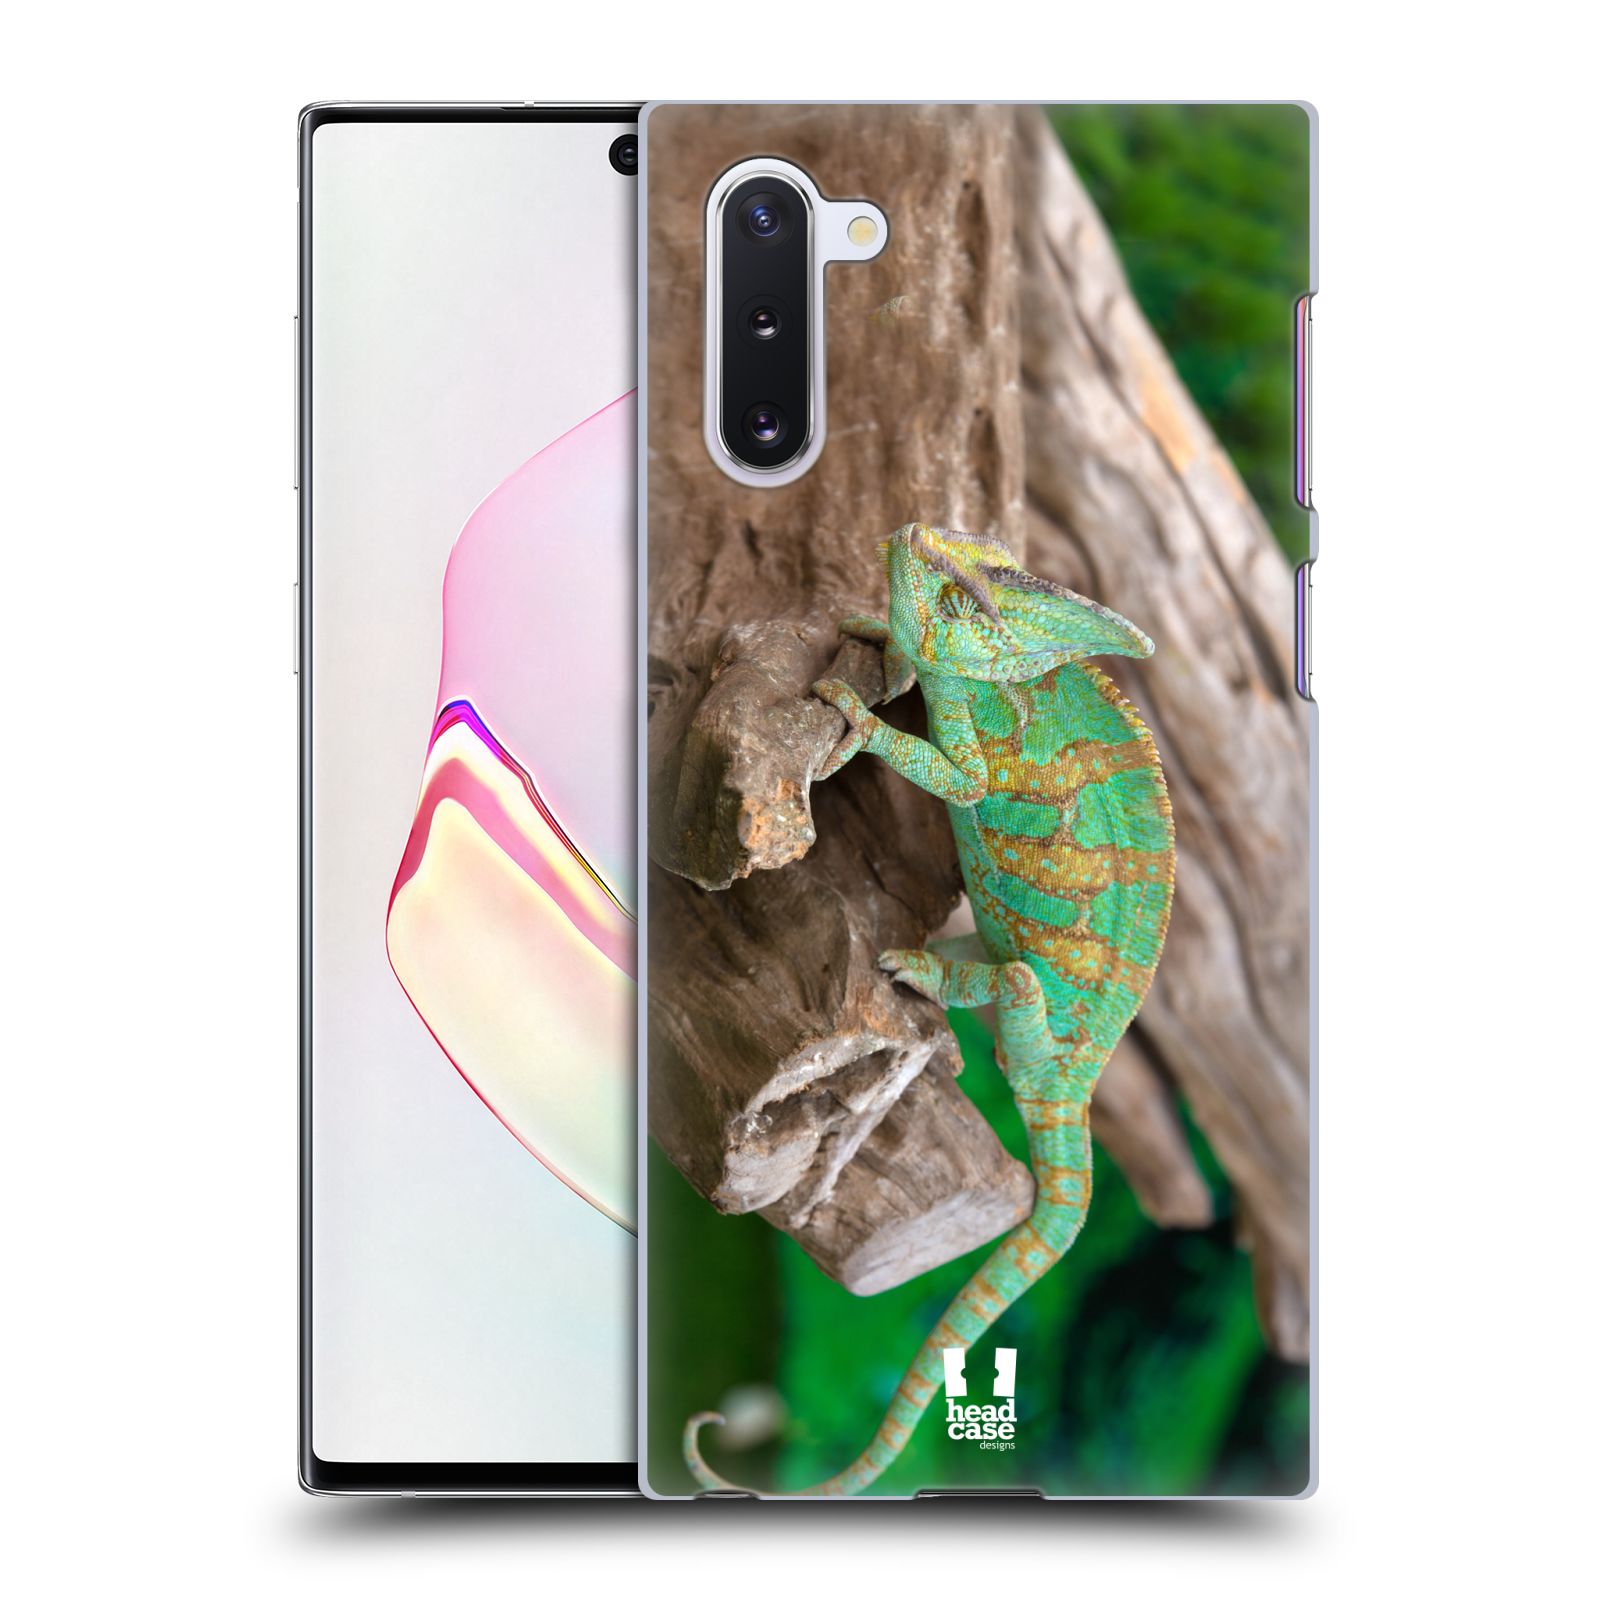 Pouzdro na mobil Samsung Galaxy Note 10 - HEAD CASE - vzor slavná zvířata foto chameleon